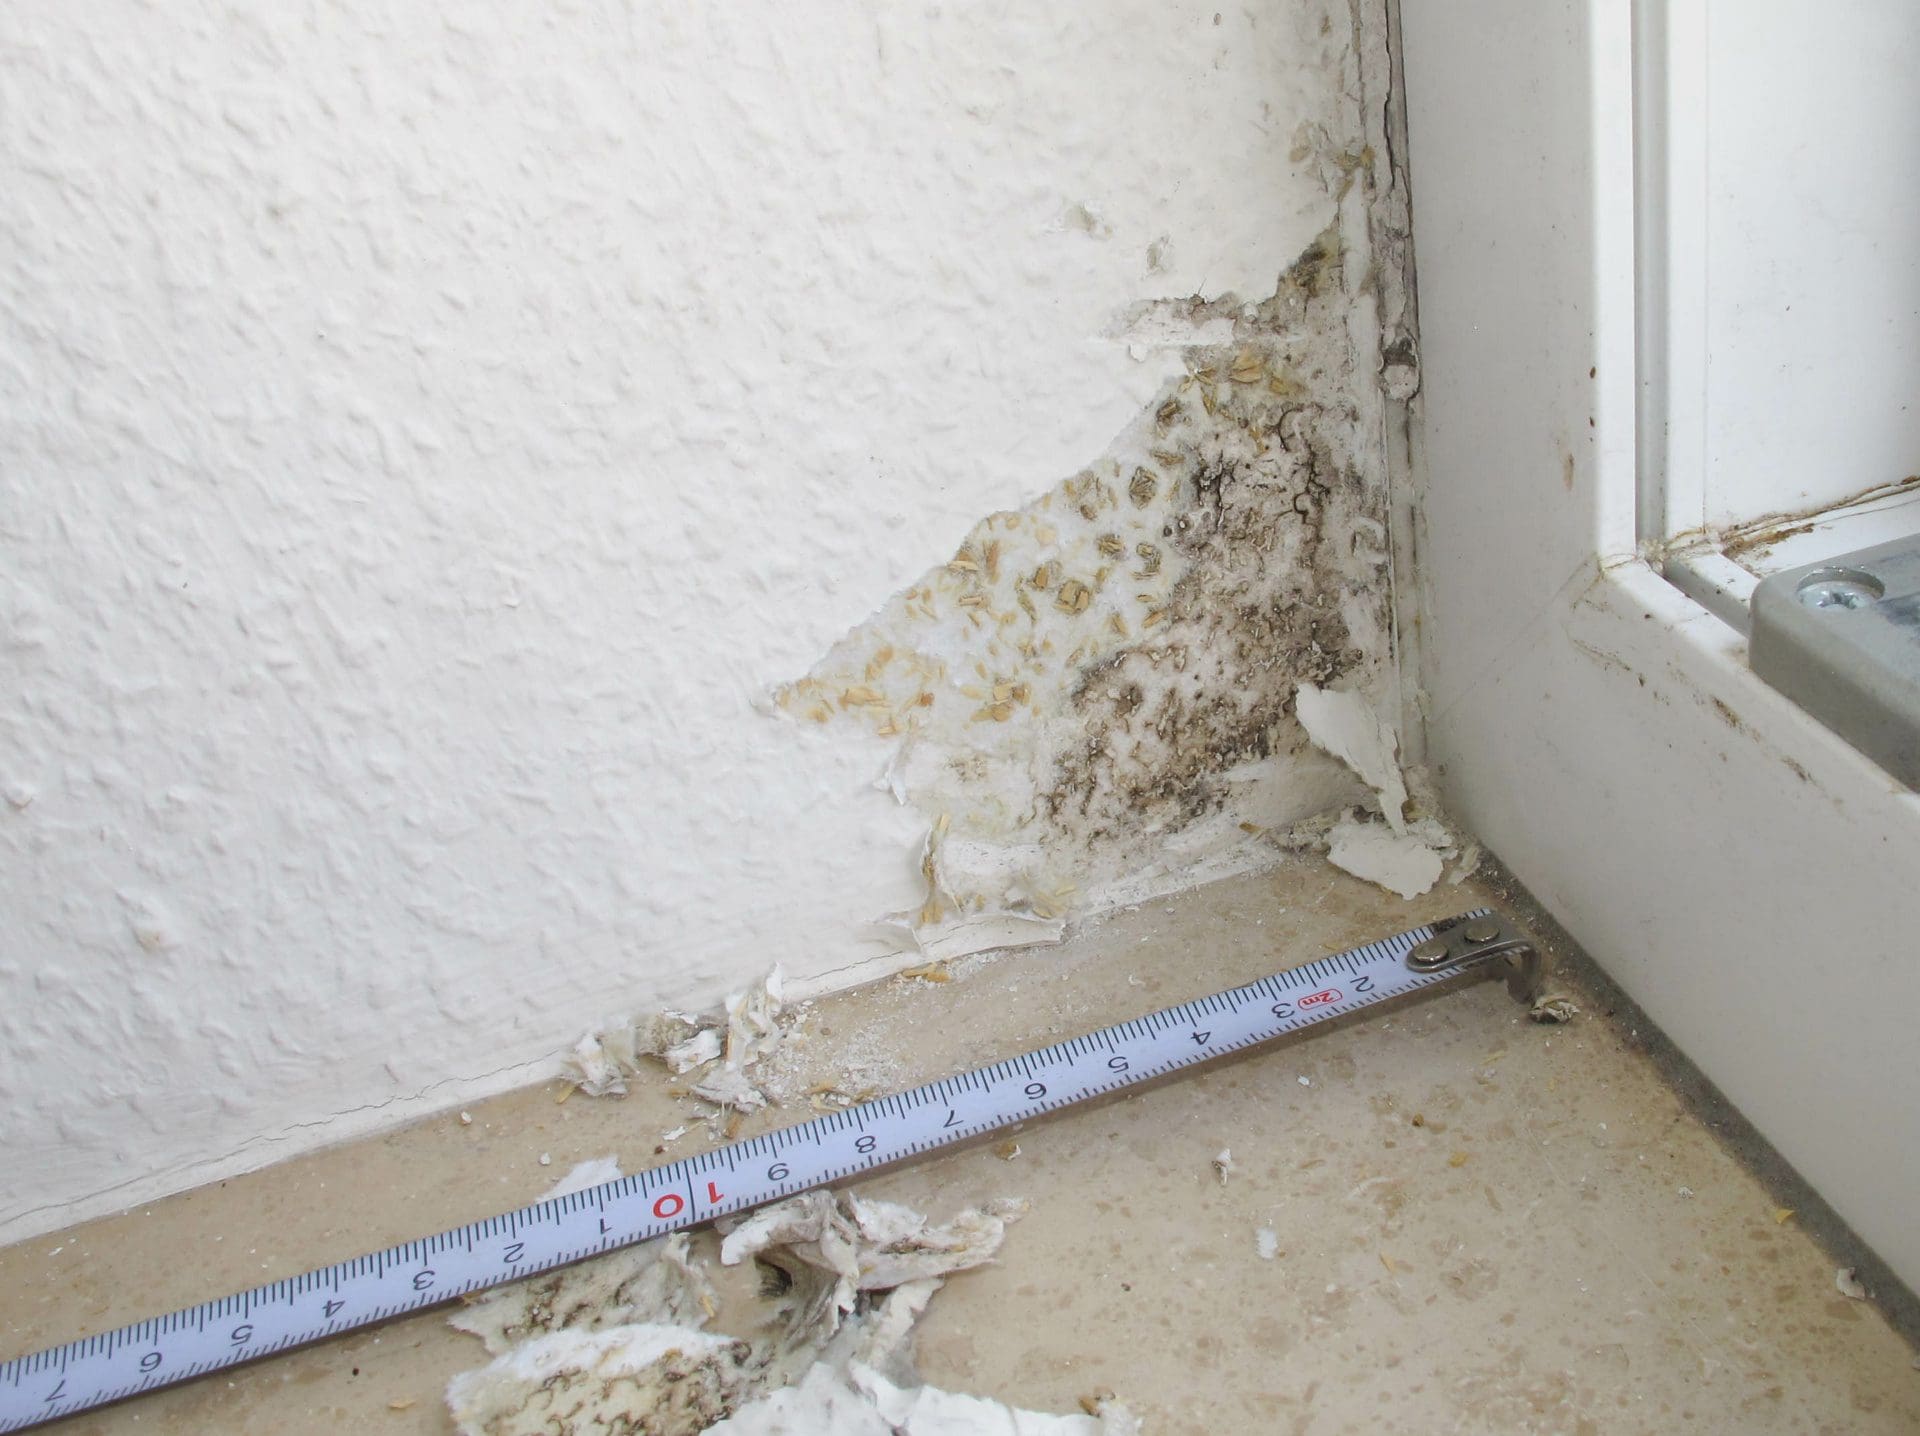 Schimmelbefall an der Wand in der Wohnung, nähe Fenster - Wie entfernen / beseitigen?! (© Dieter Pregizer / stock.adobe.com)